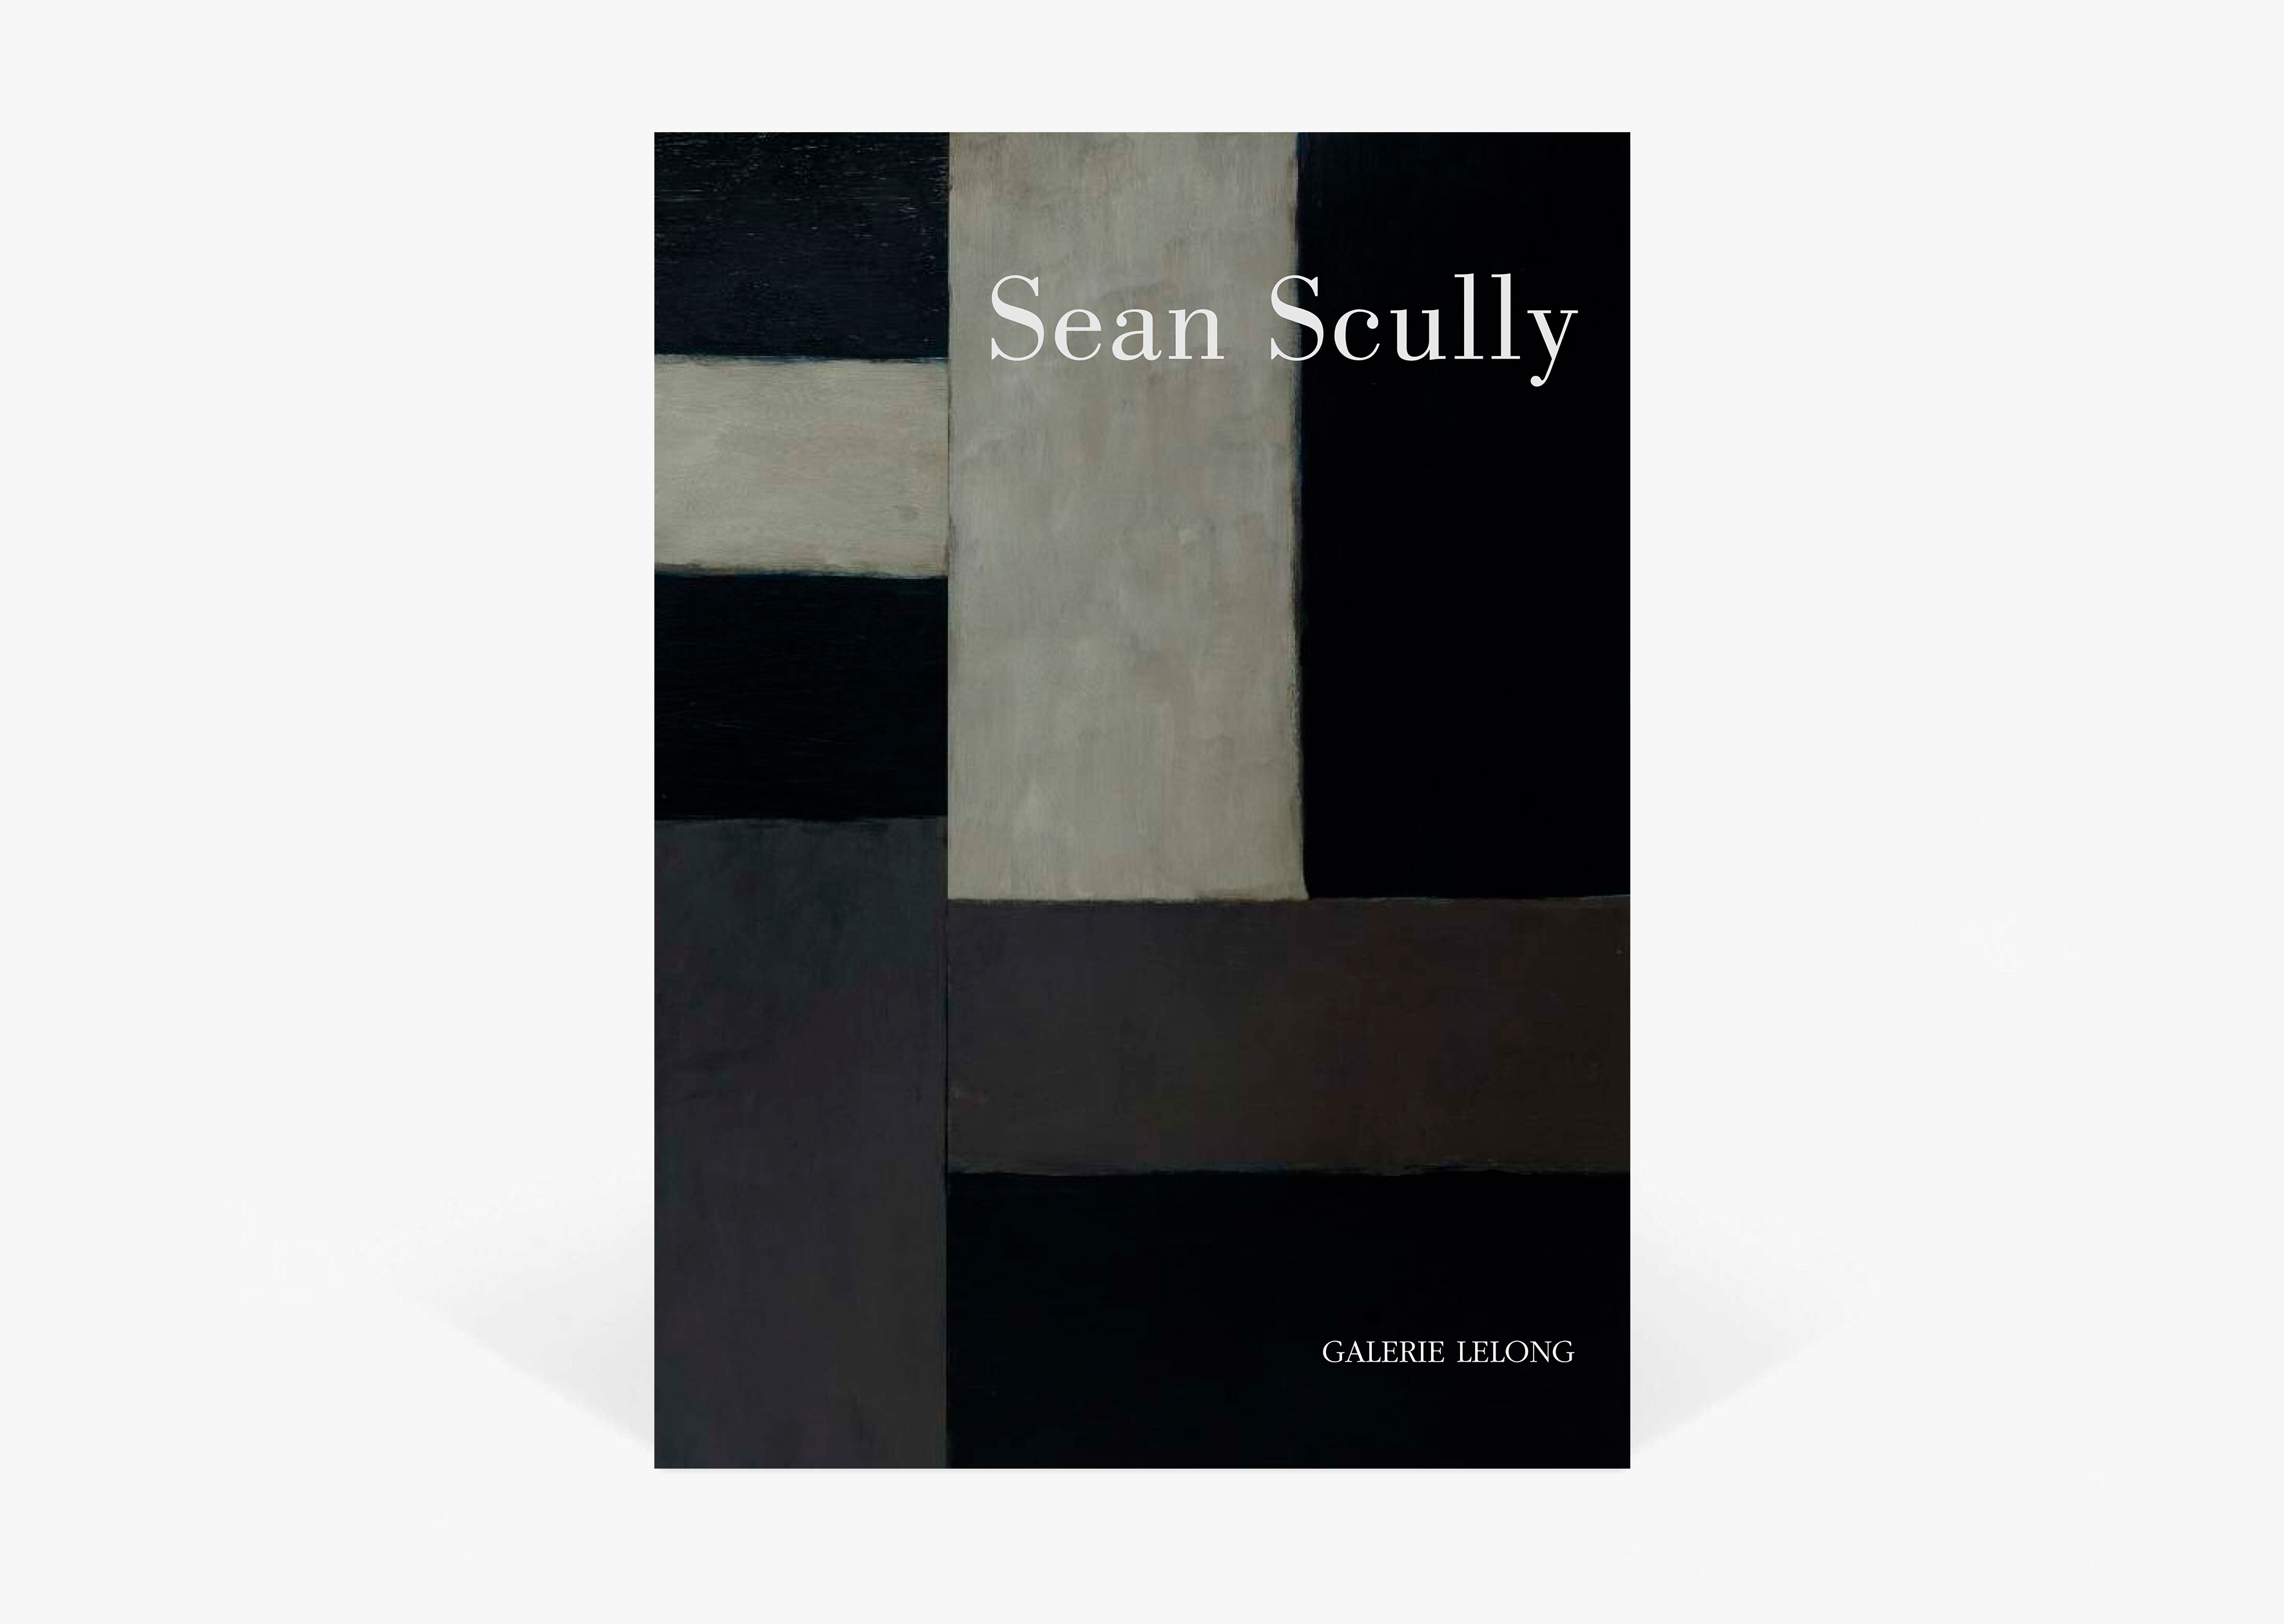 livre Doric Sean Scully